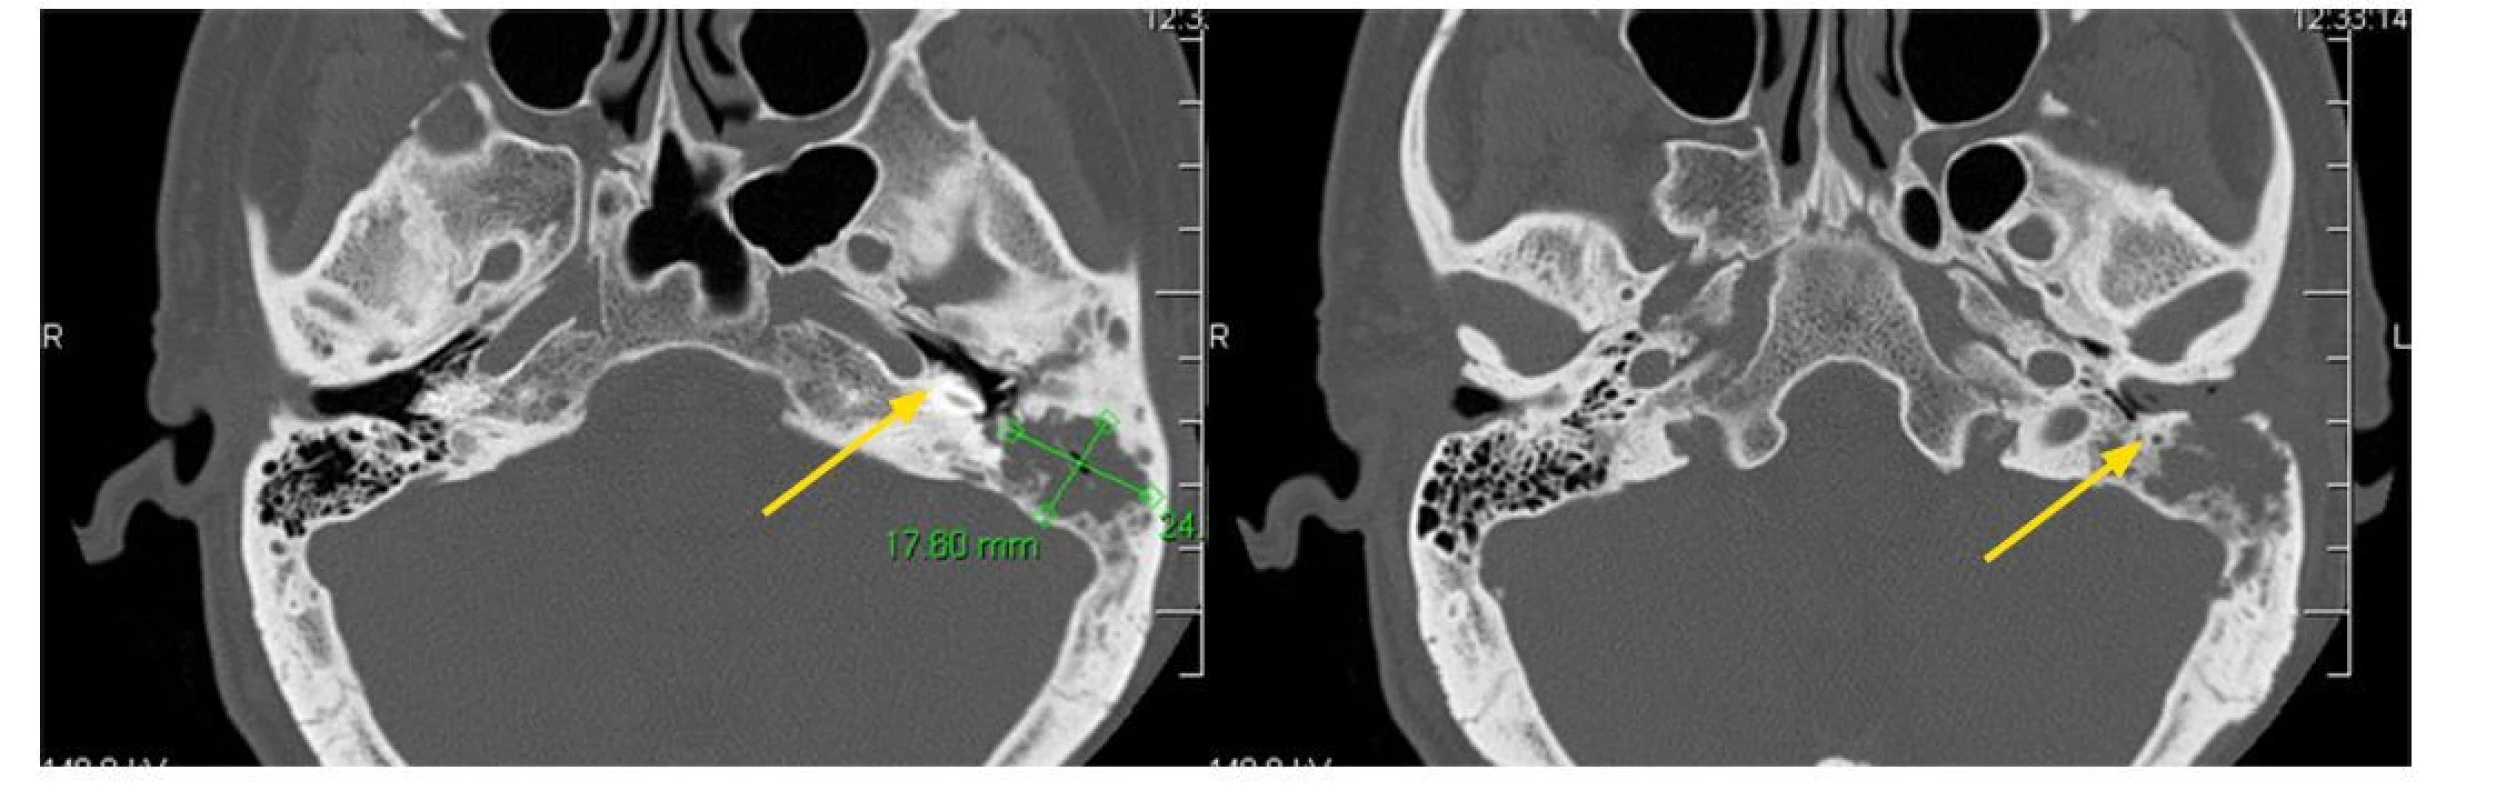 Histiocytóza z Langerhansových buněk (LCH) někdy postihuje zevní zvukovod. Způsobí zánět makroskopicky neodlišitelný od klasického zánětu
zevního zvukovodu. Pouze histologické vyšetření postižené kůže by mohla prokázat, že se jedná o LCH. Postupně infiltrace přestoupí na spánkovou kost
a vytvoří v ní osteolytická ložiska, jak dokumentuje tento CT obraz pacientky s pokročilým procesem ve spánkové kosti. Šipky ukazují místa destrukce
spánkové kosti